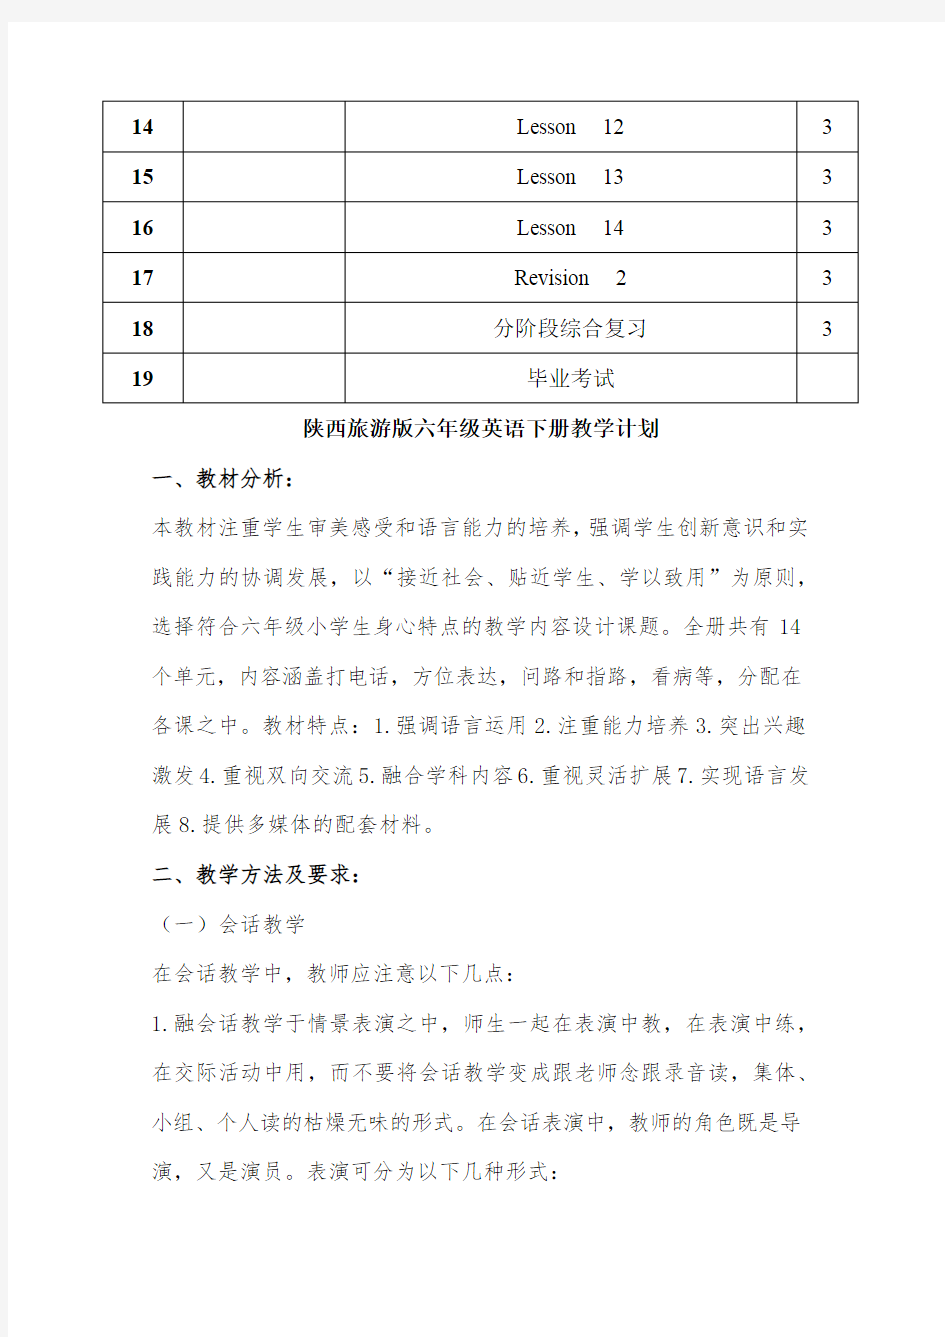 陕旅版小学六年级英语下册教材进度表及教材分析